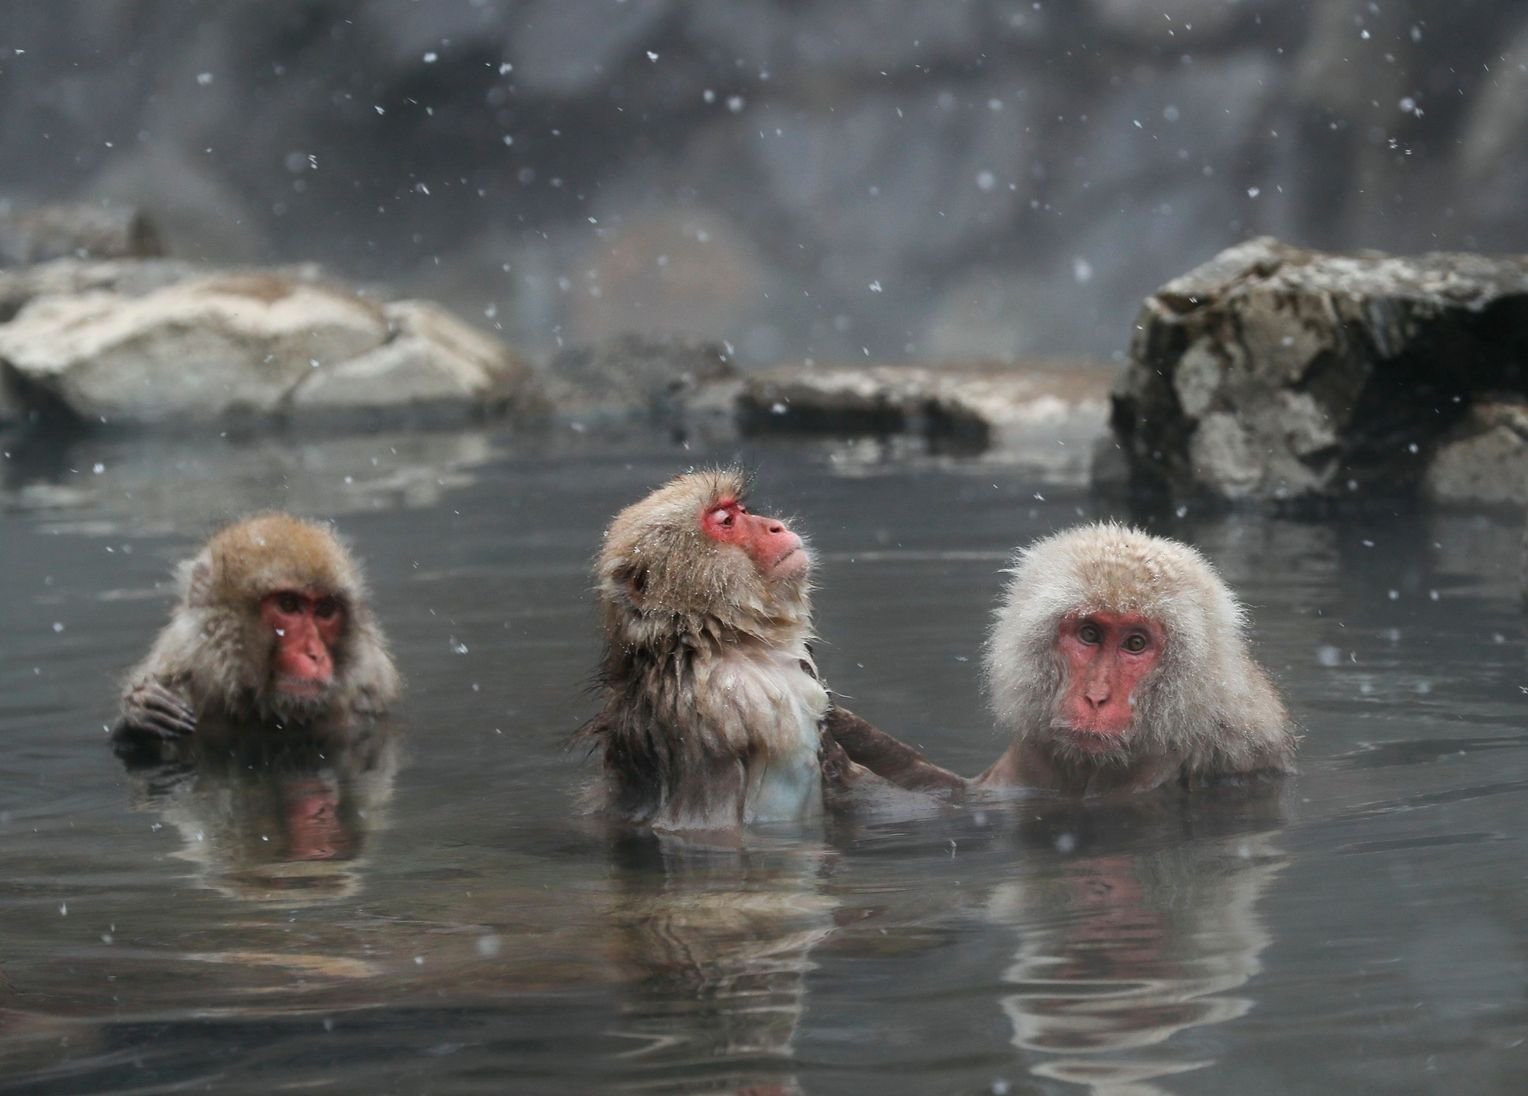 Обезьяна купается в теплой воде. Джигокудани. Макаки в горячих источниках в Японии. Парк Джигокудани Япония. Парк снежных обезьян Джигокудани.